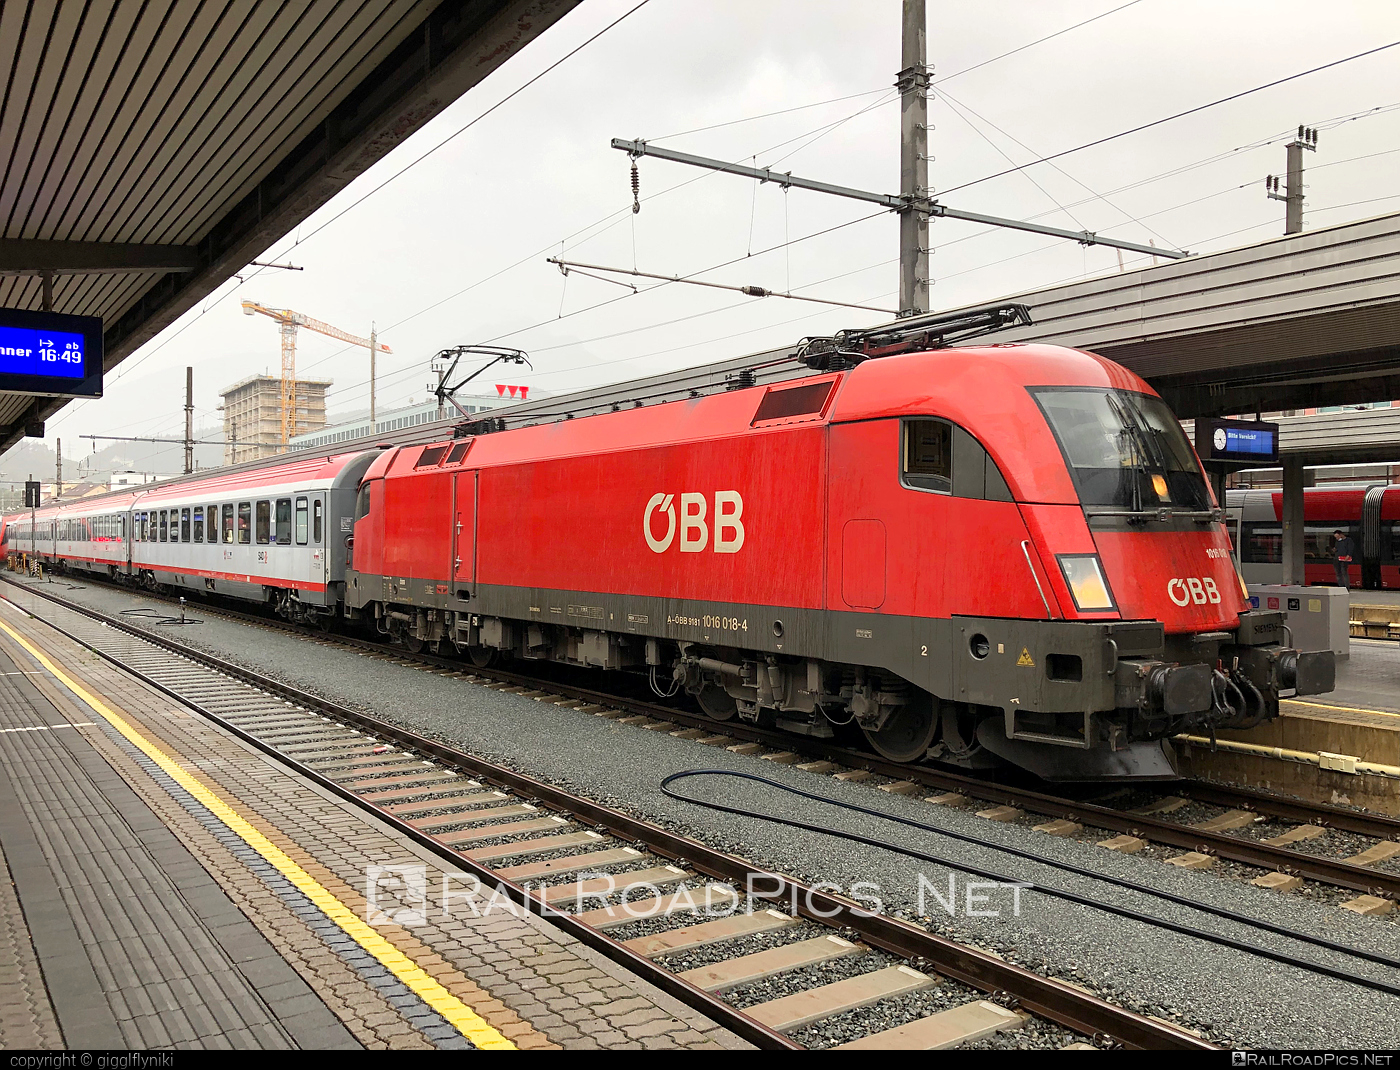 Siemens ES 64 U2 - 1016 018 operated by Österreichische Bundesbahnen #es64 #es64u2 #eurosprinter #obb #osterreichischebundesbahnen #siemens #siemensEs64 #siemensEs64u2 #siemenstaurus #taurus #tauruslocomotive